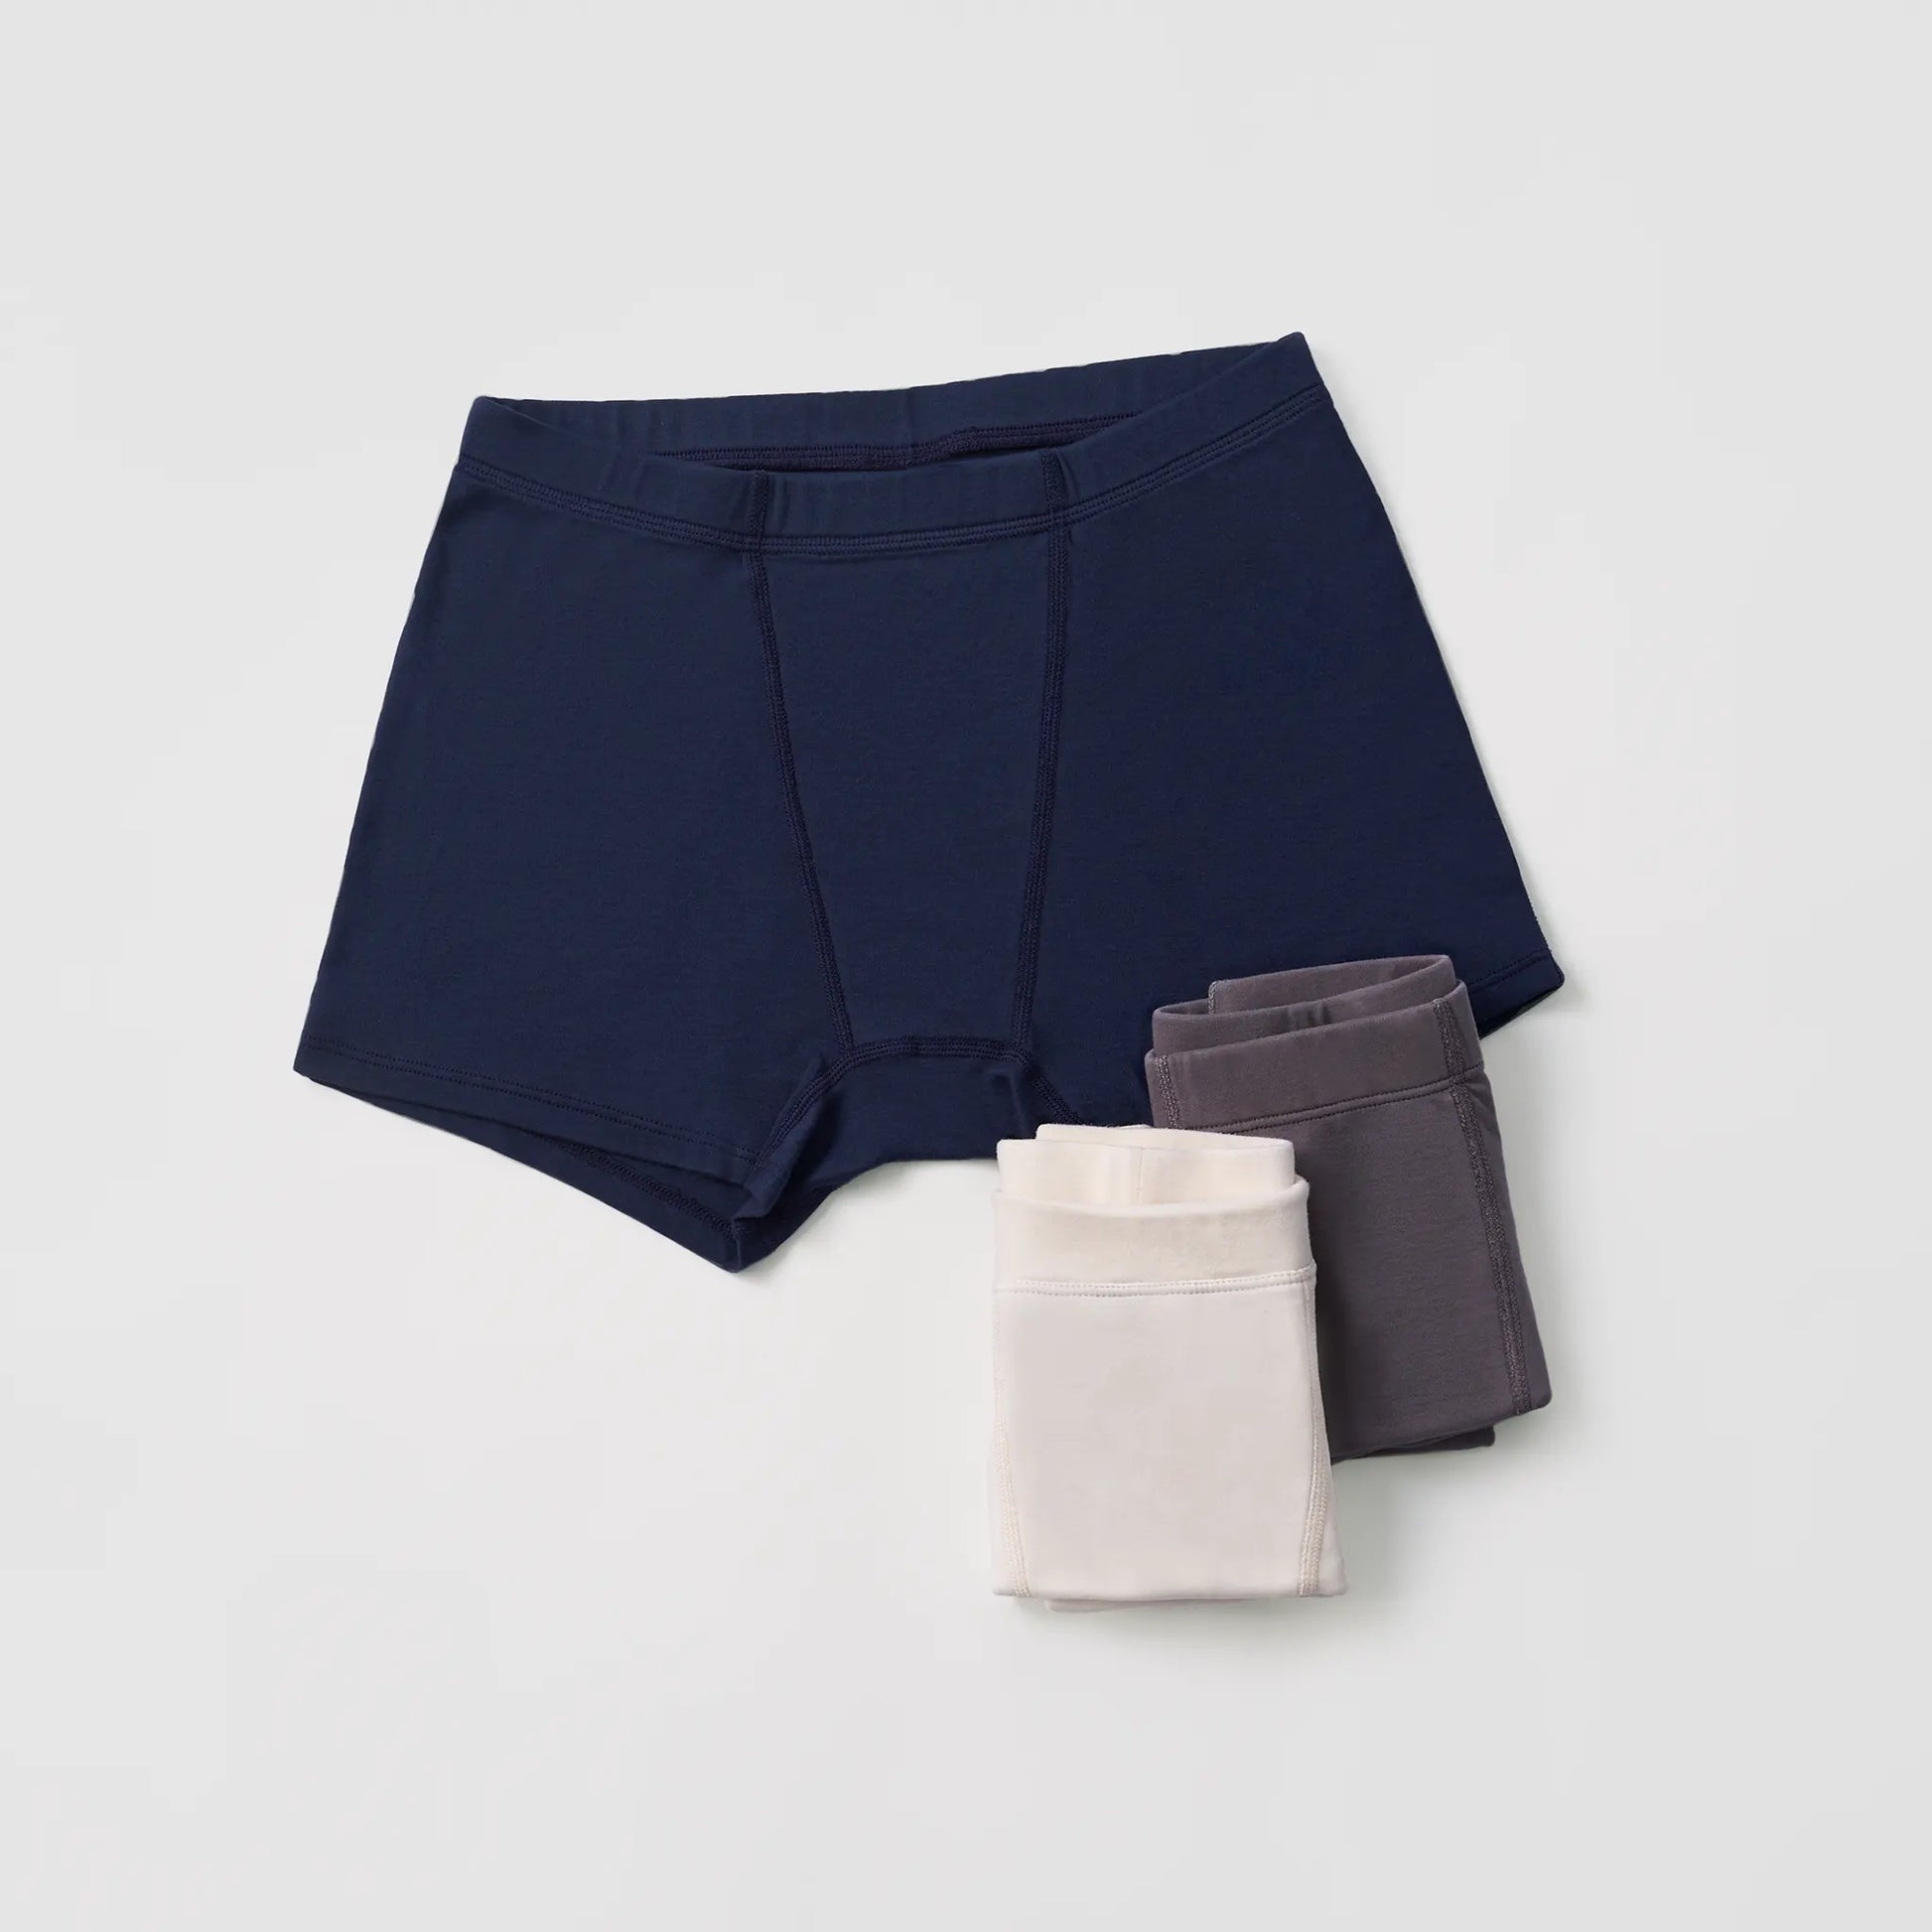 通用 Men's Woven Boxers Underwear 100% Cotton Premium Quality